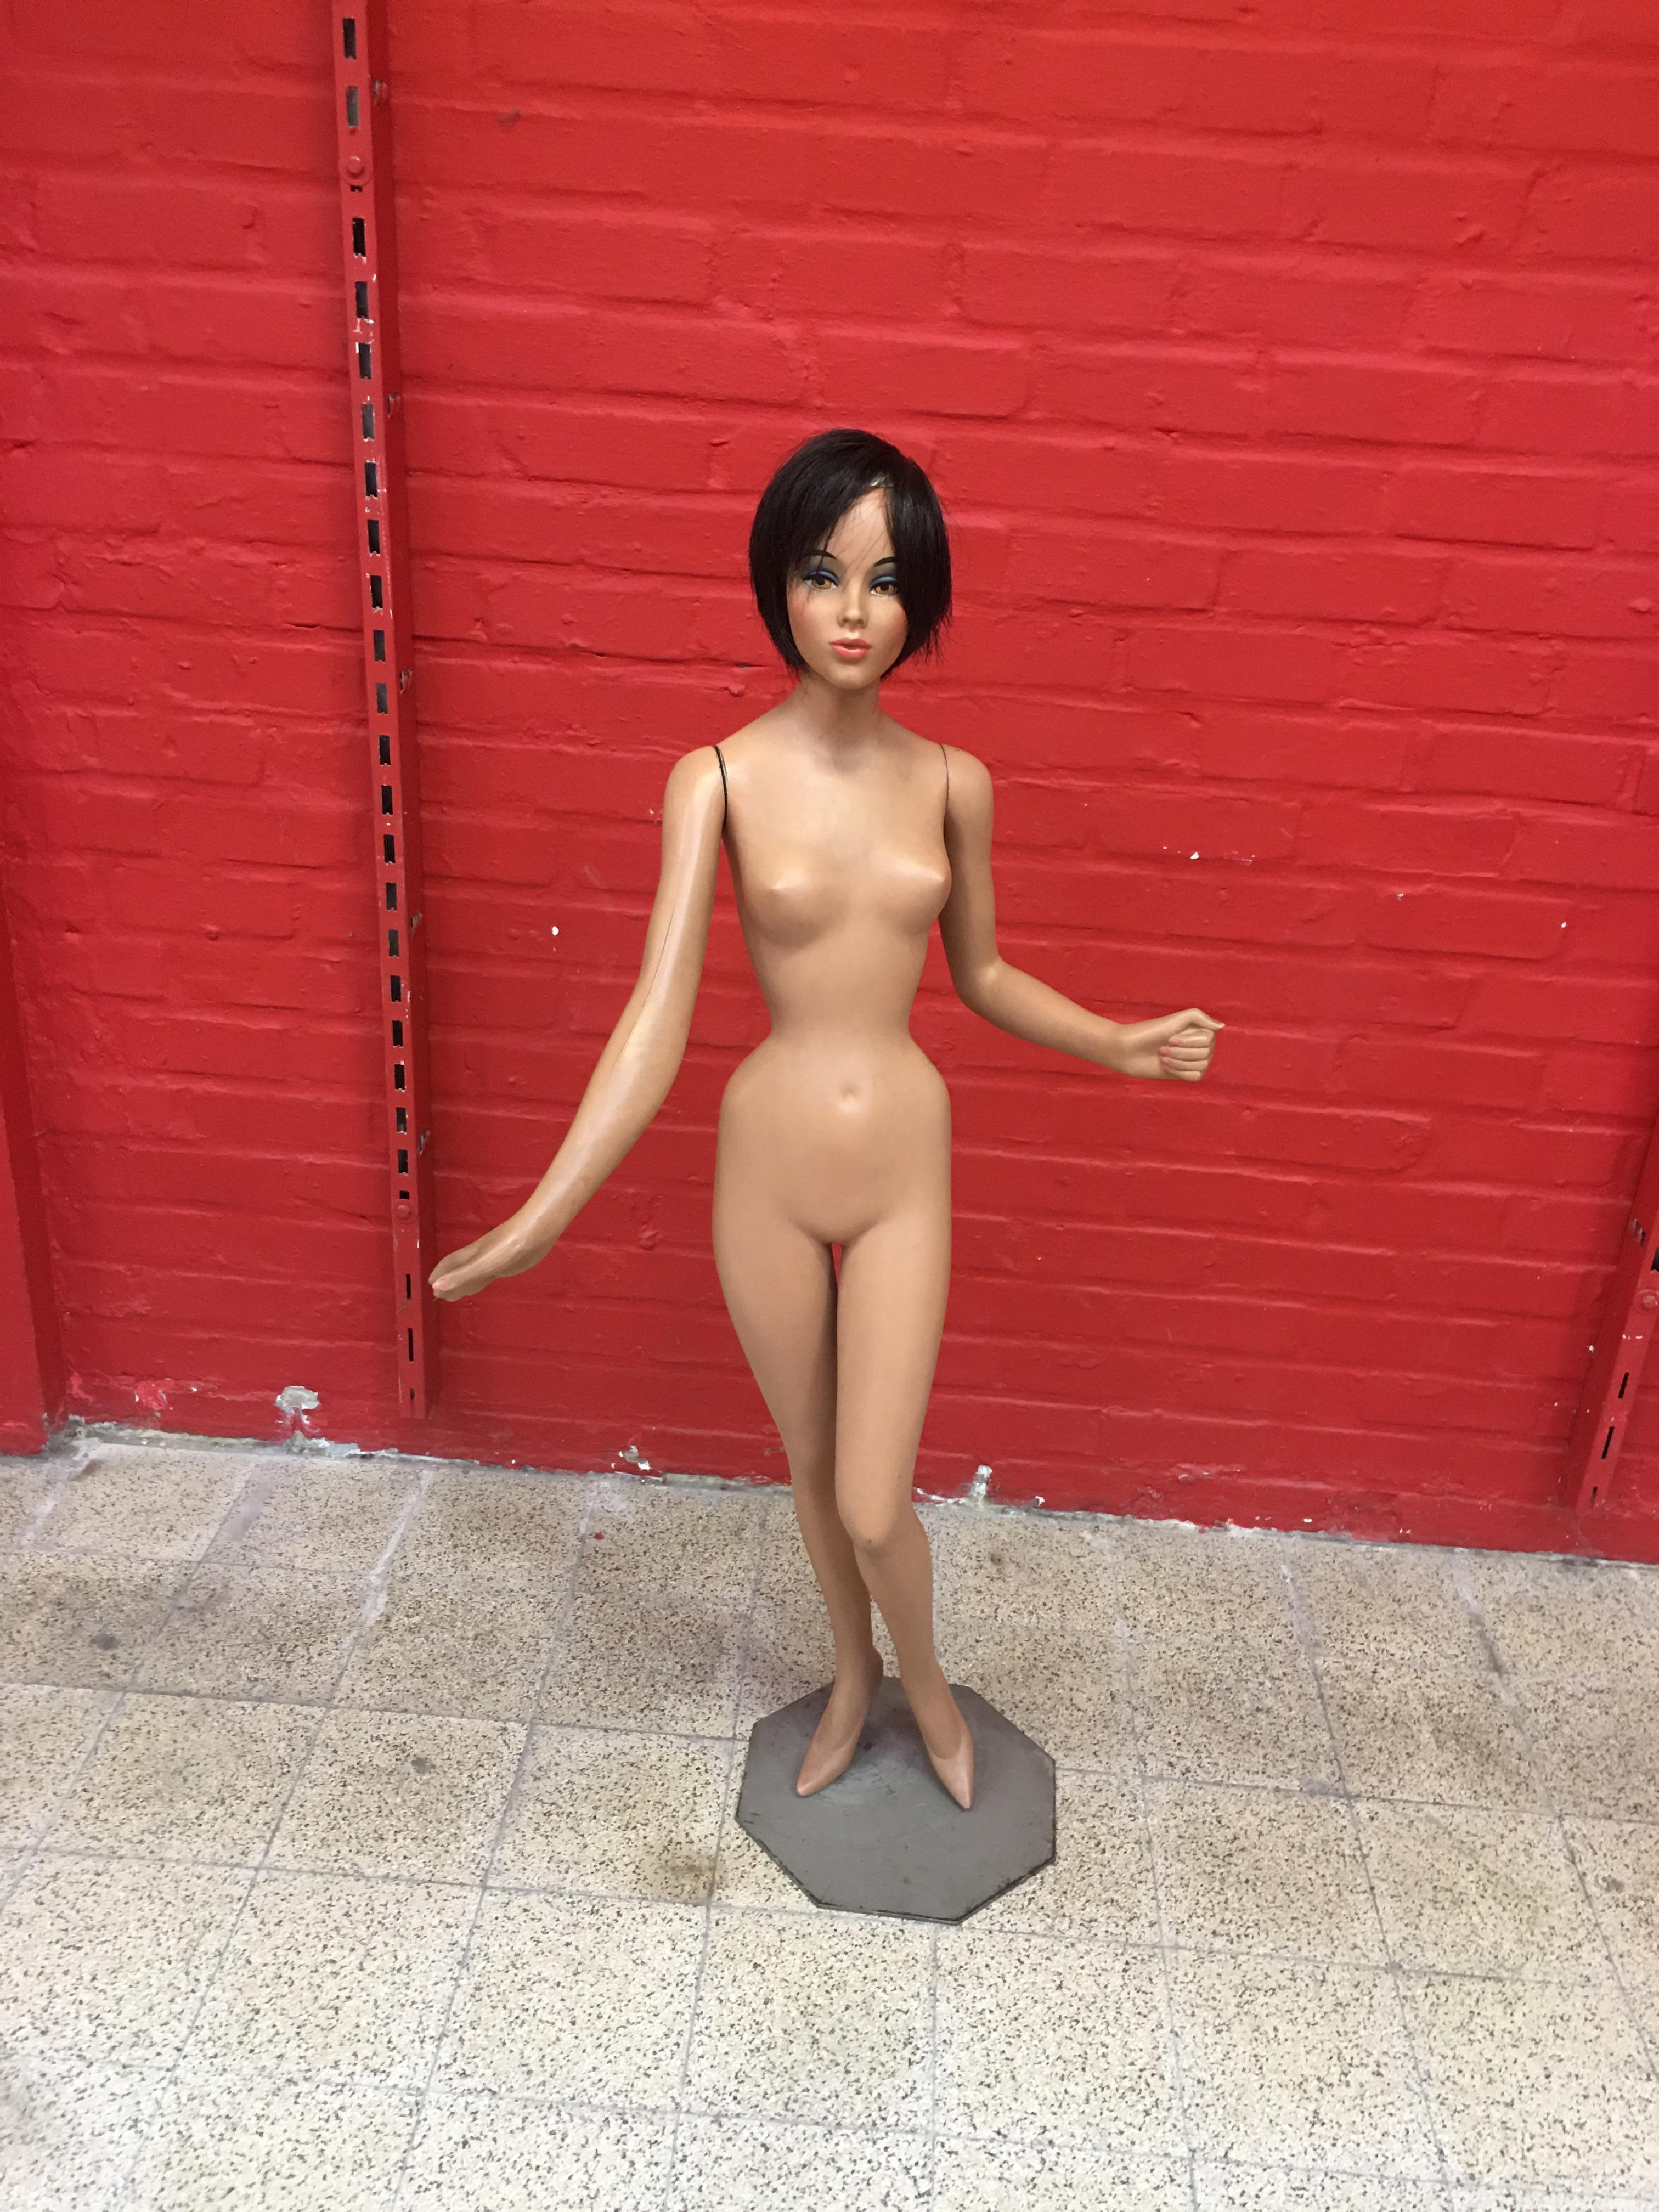 miniature mannequin